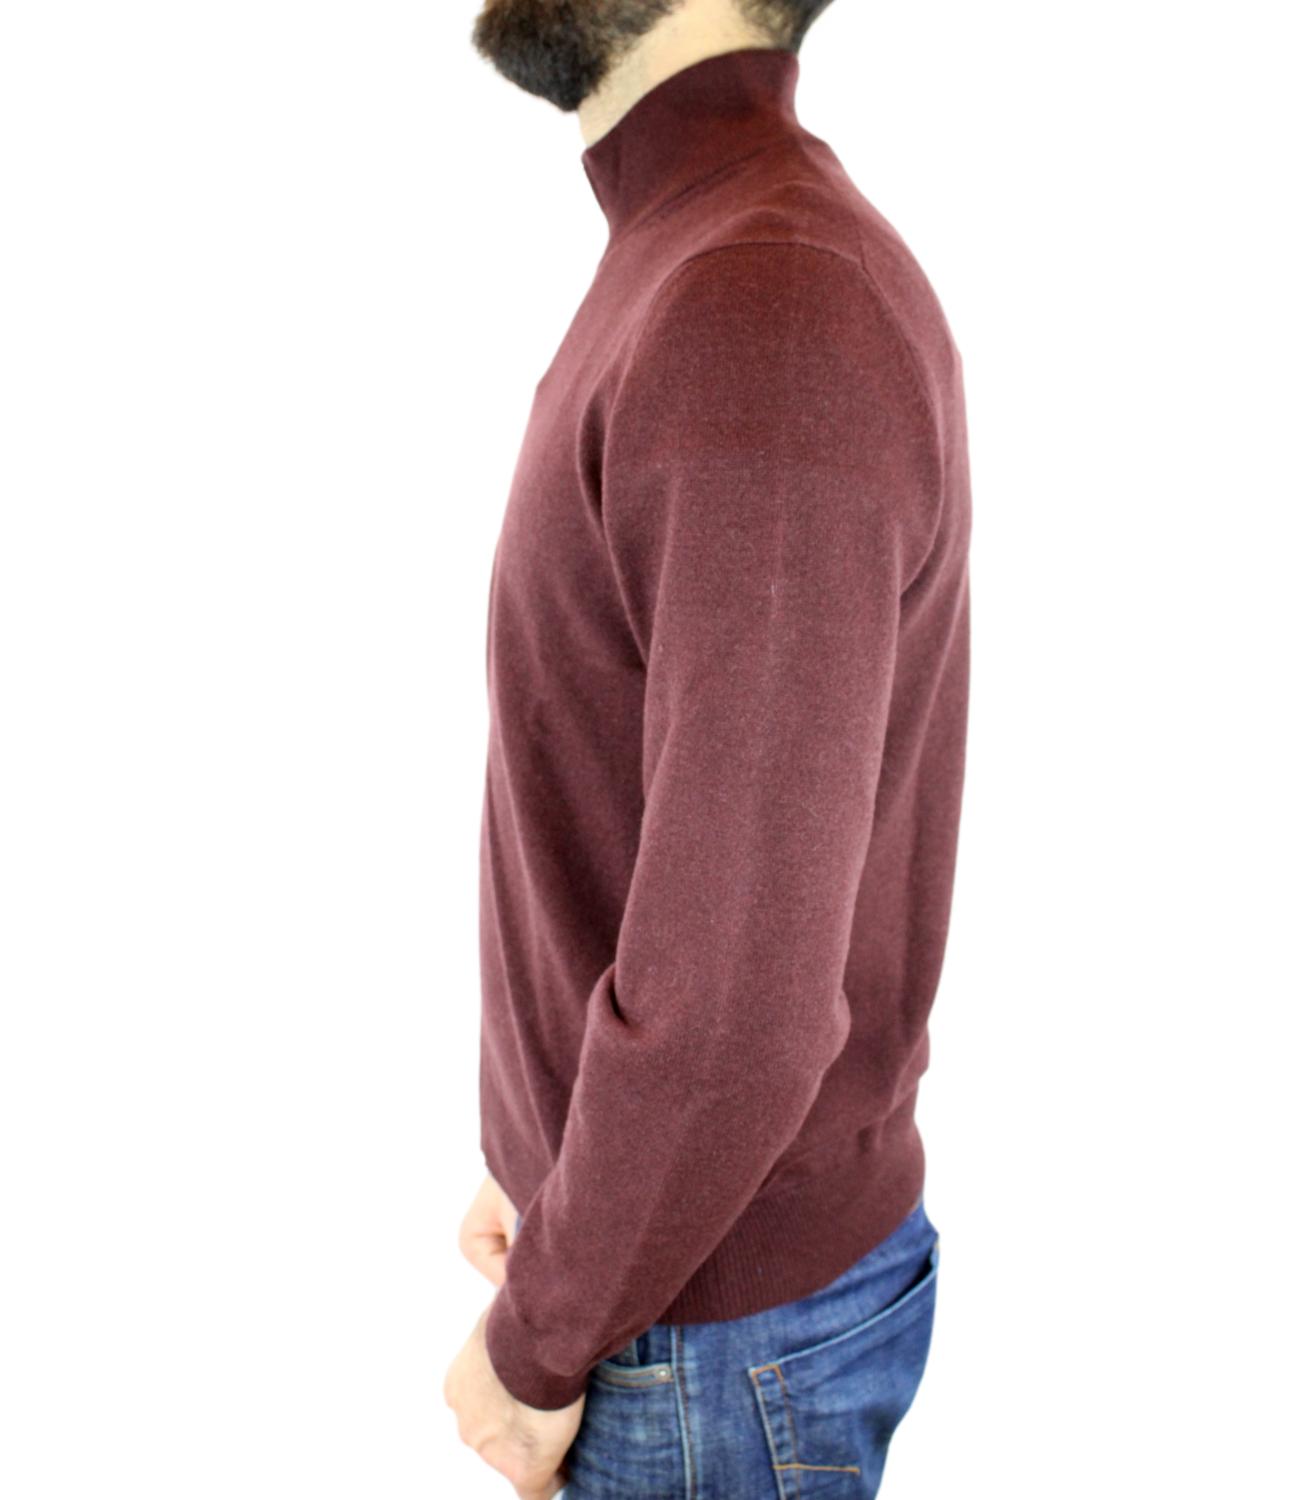 Bordeaux men's turtleneck sweater with zip